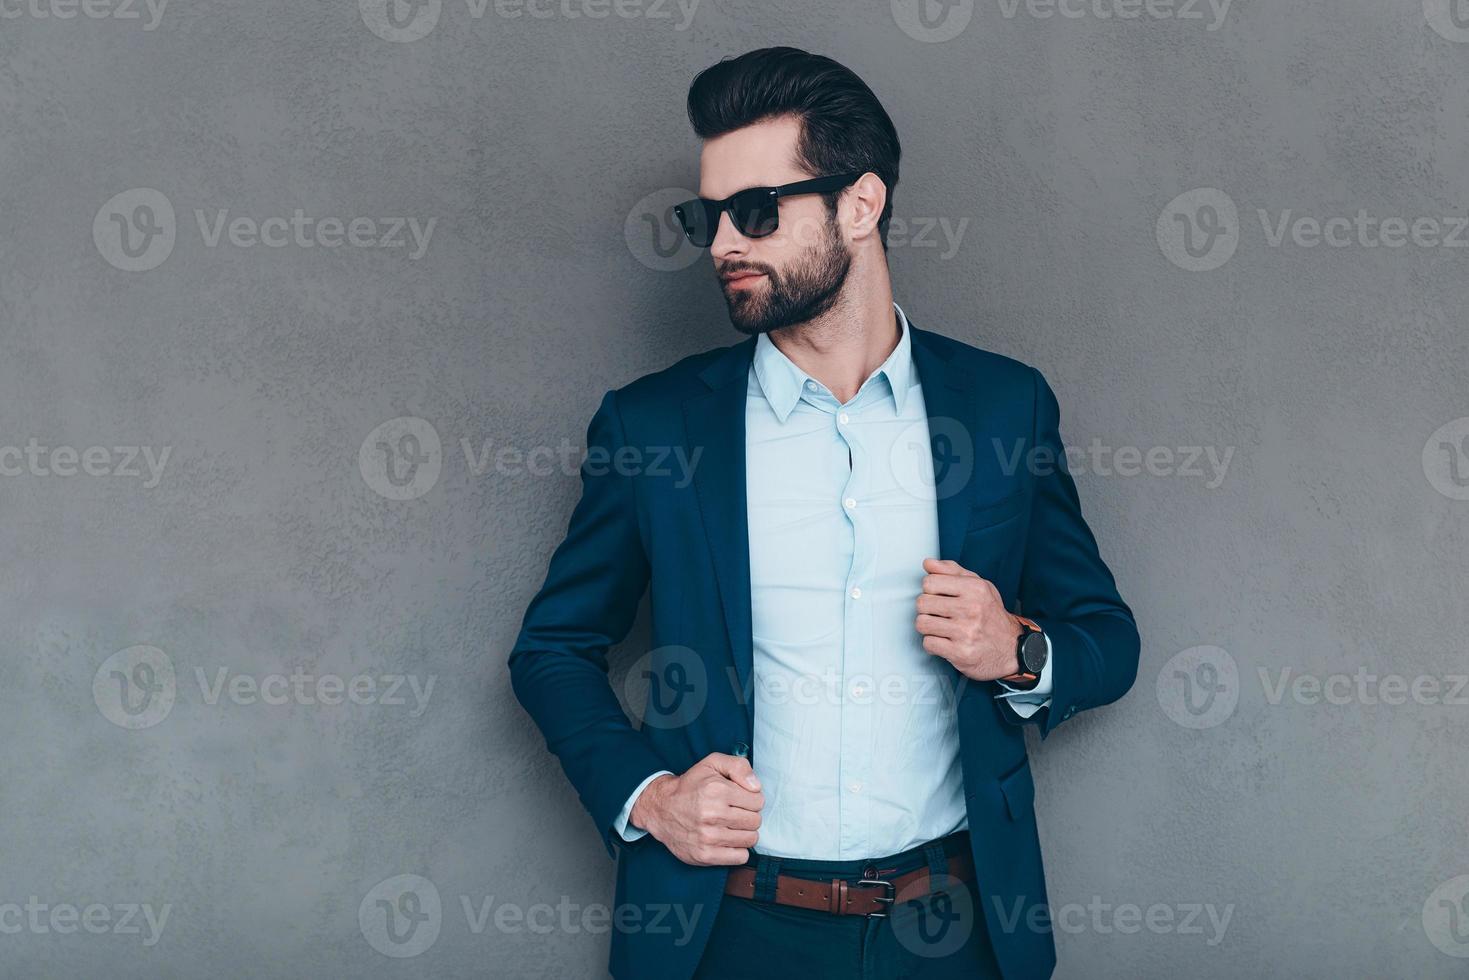 stilvoll und erfolgreich. Junger gutaussehender Mann mit Sonnenbrille, der die Hand auf seiner Jacke hält und wegschaut, während er vor grauem Hintergrund steht foto